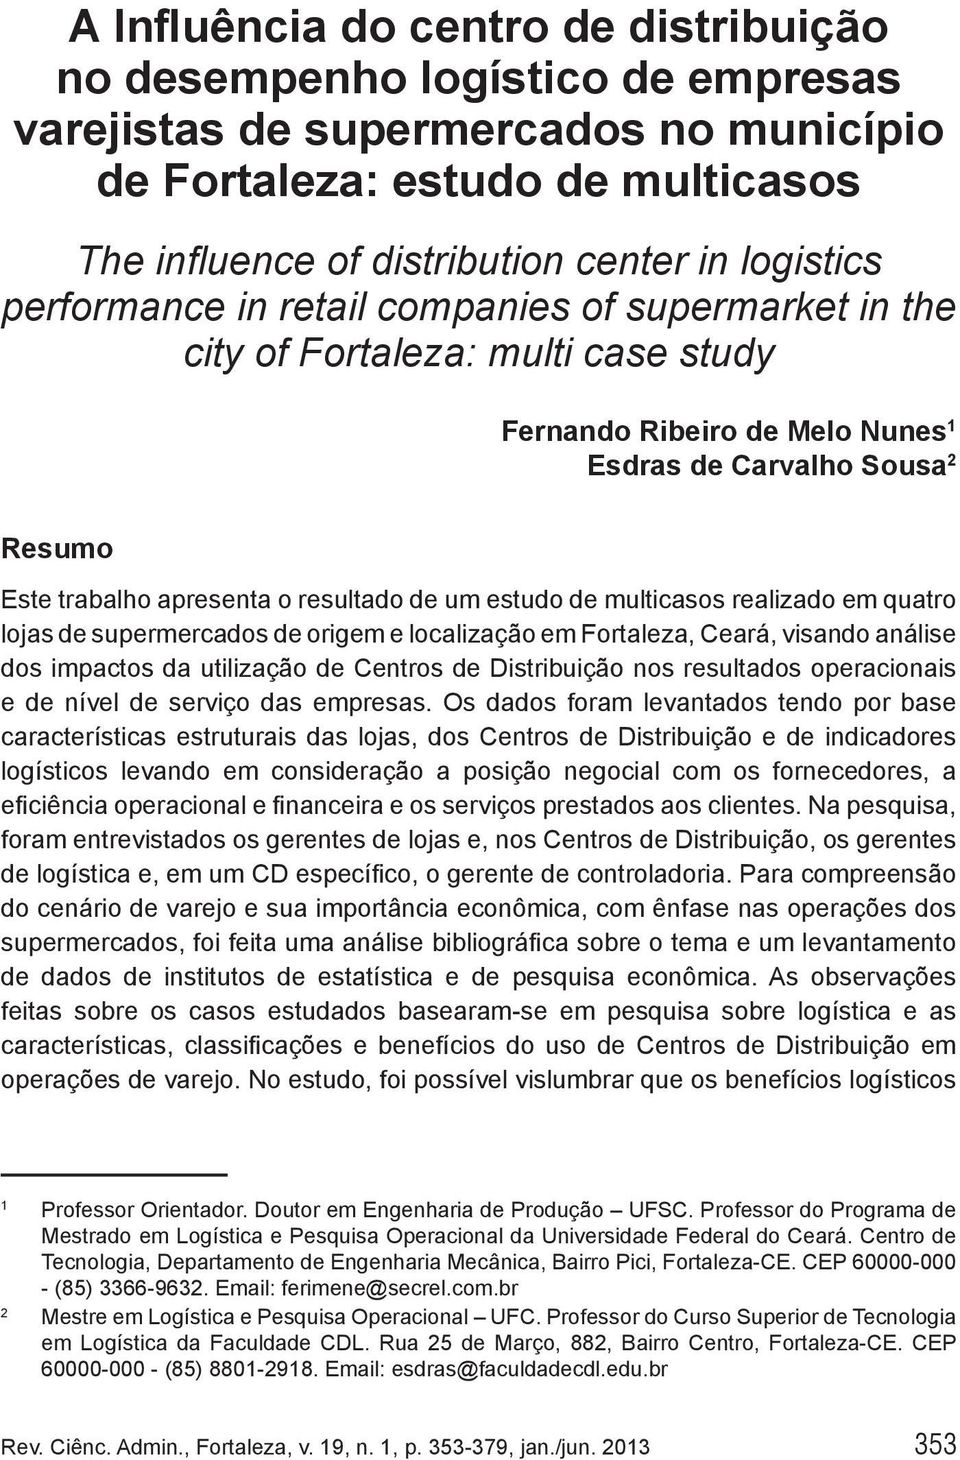 resultado de um estudo de multicasos realizado em quatro lojas de supermercados de origem e localização em Fortaleza, Ceará, visando análise dos impactos da utilização de Centros de Distribuição nos